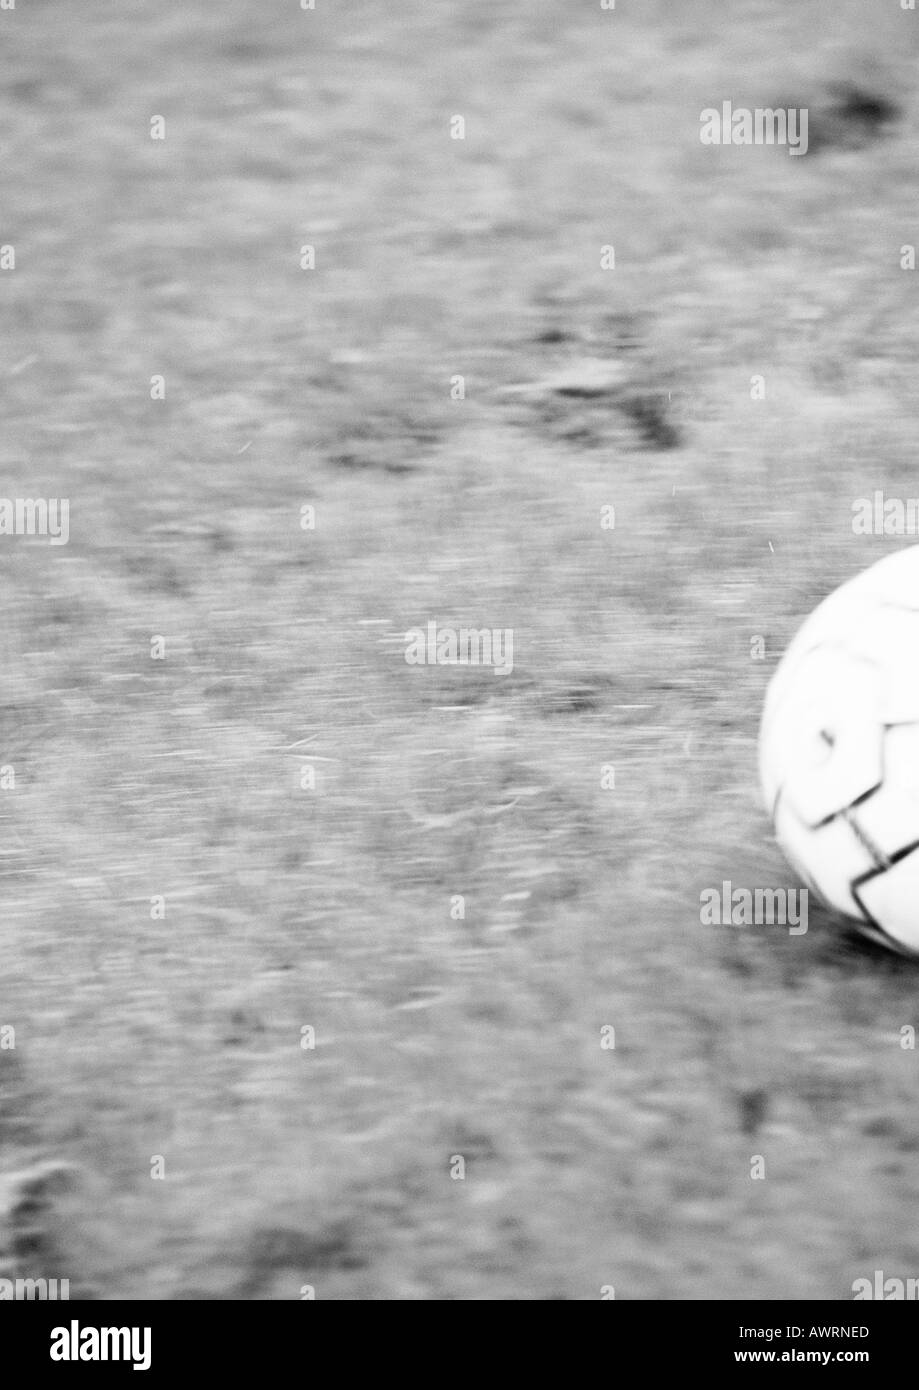 Ballon de foot sur herbe, floue, b&w. Banque D'Images